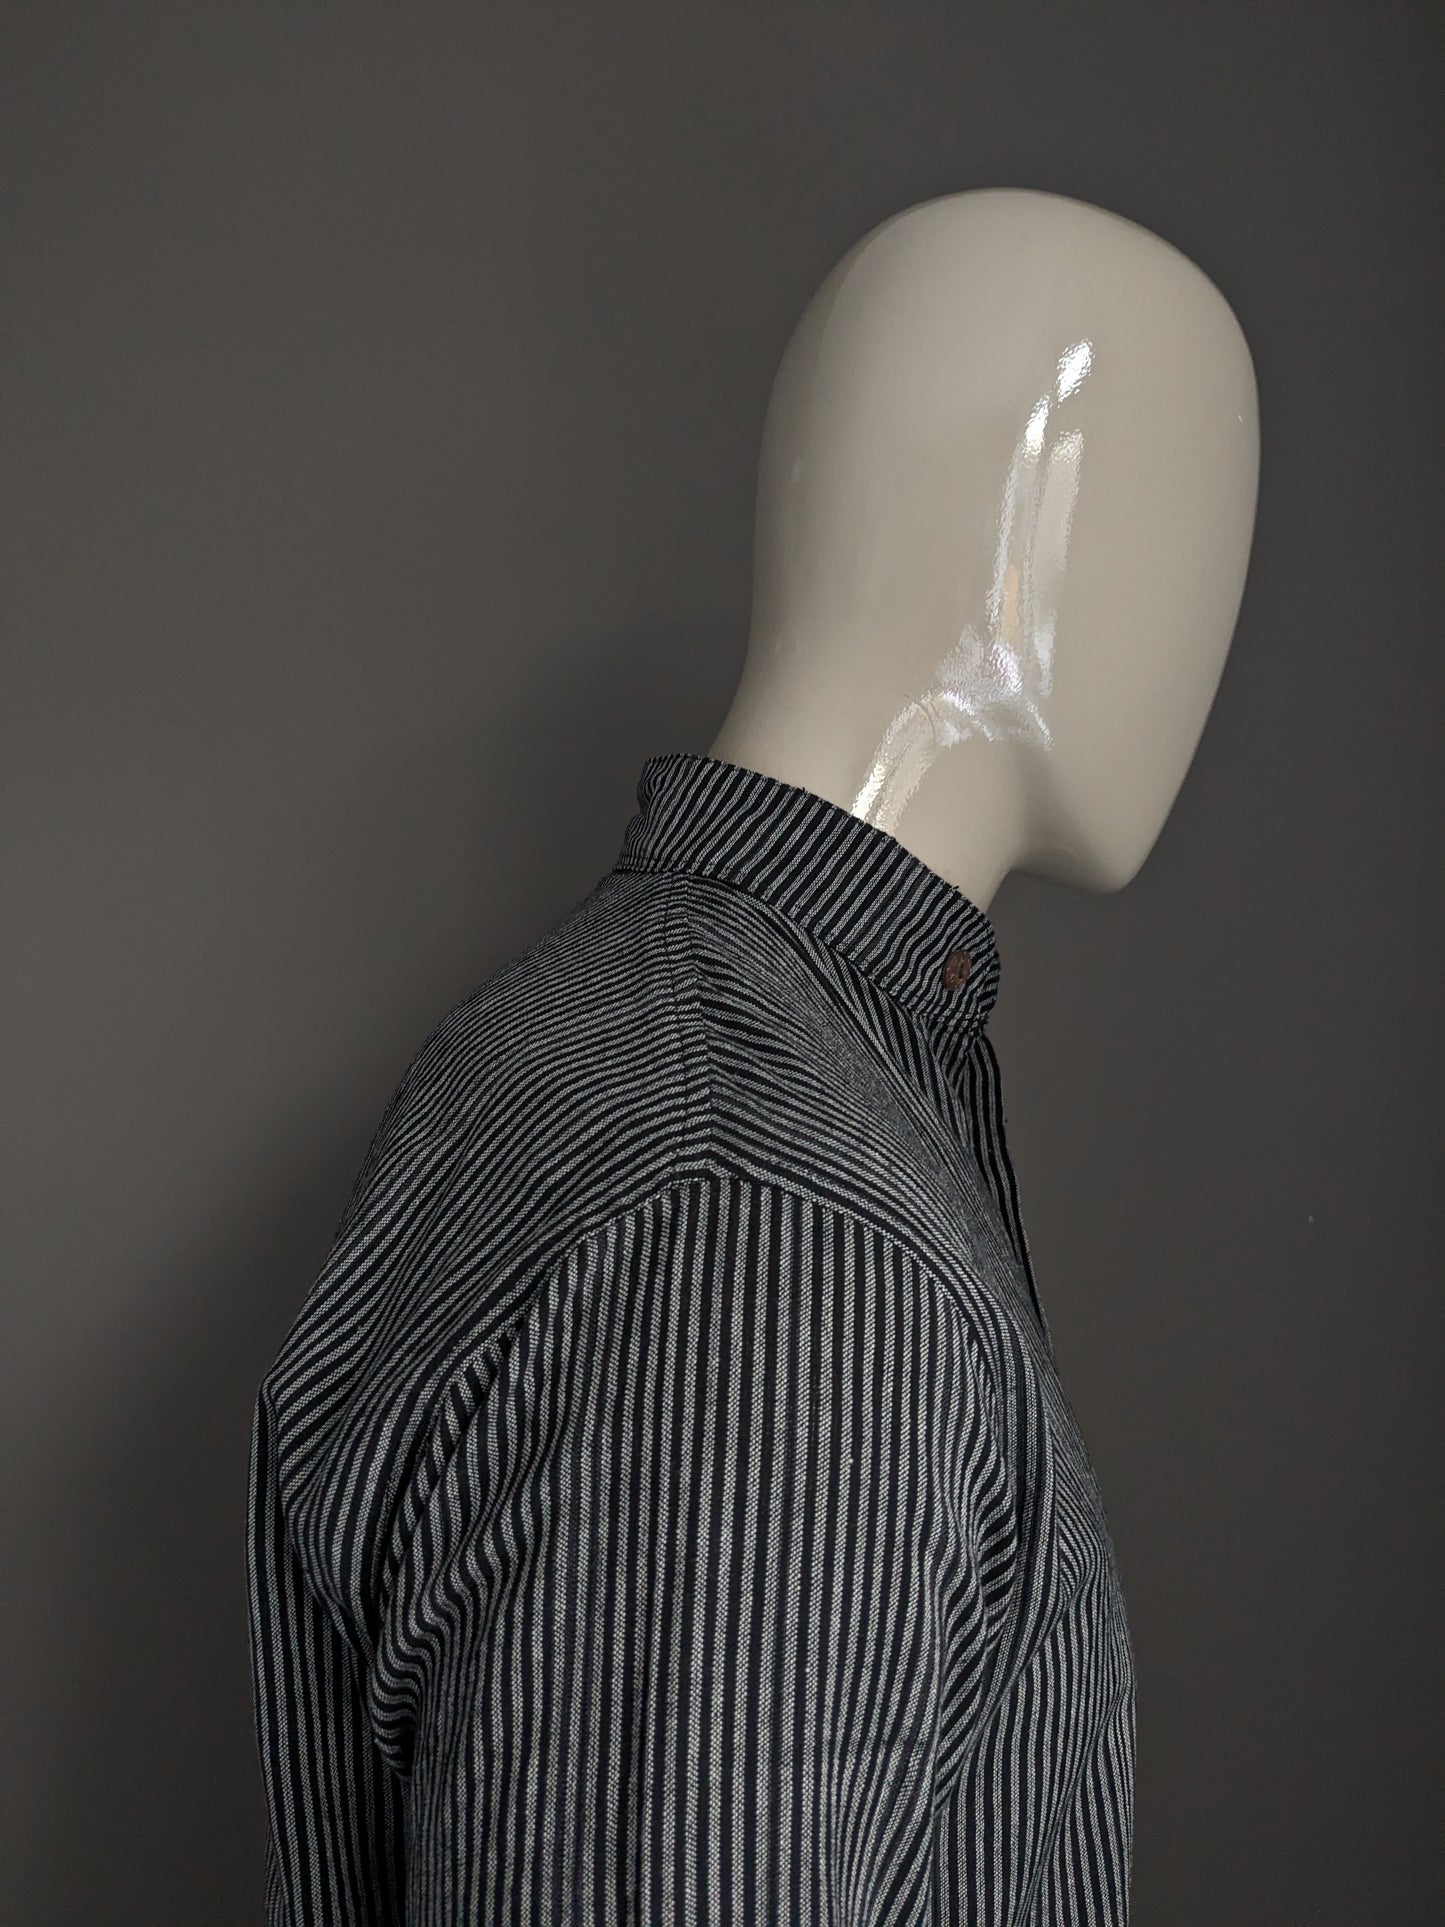 Camisa vintage vertical / agricultores / cuello mao. Rayado gris negro. Talla M.